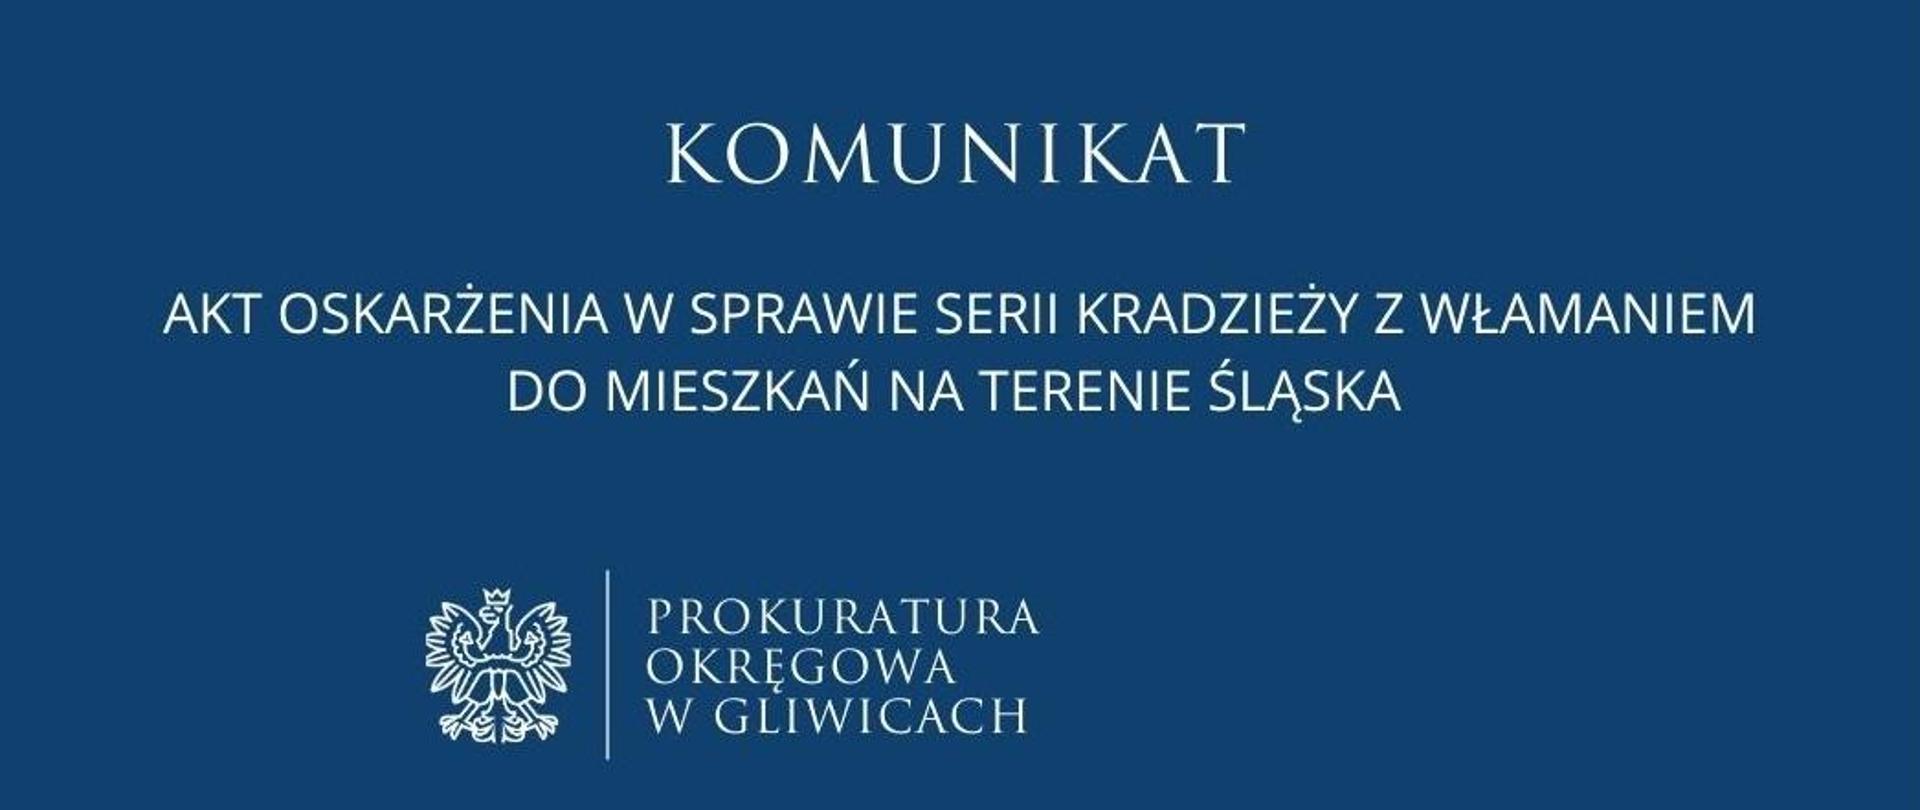 Akt oskarżenia w sprawie serii kradzieży z włamaniem do mieszkań na terenie Śląska